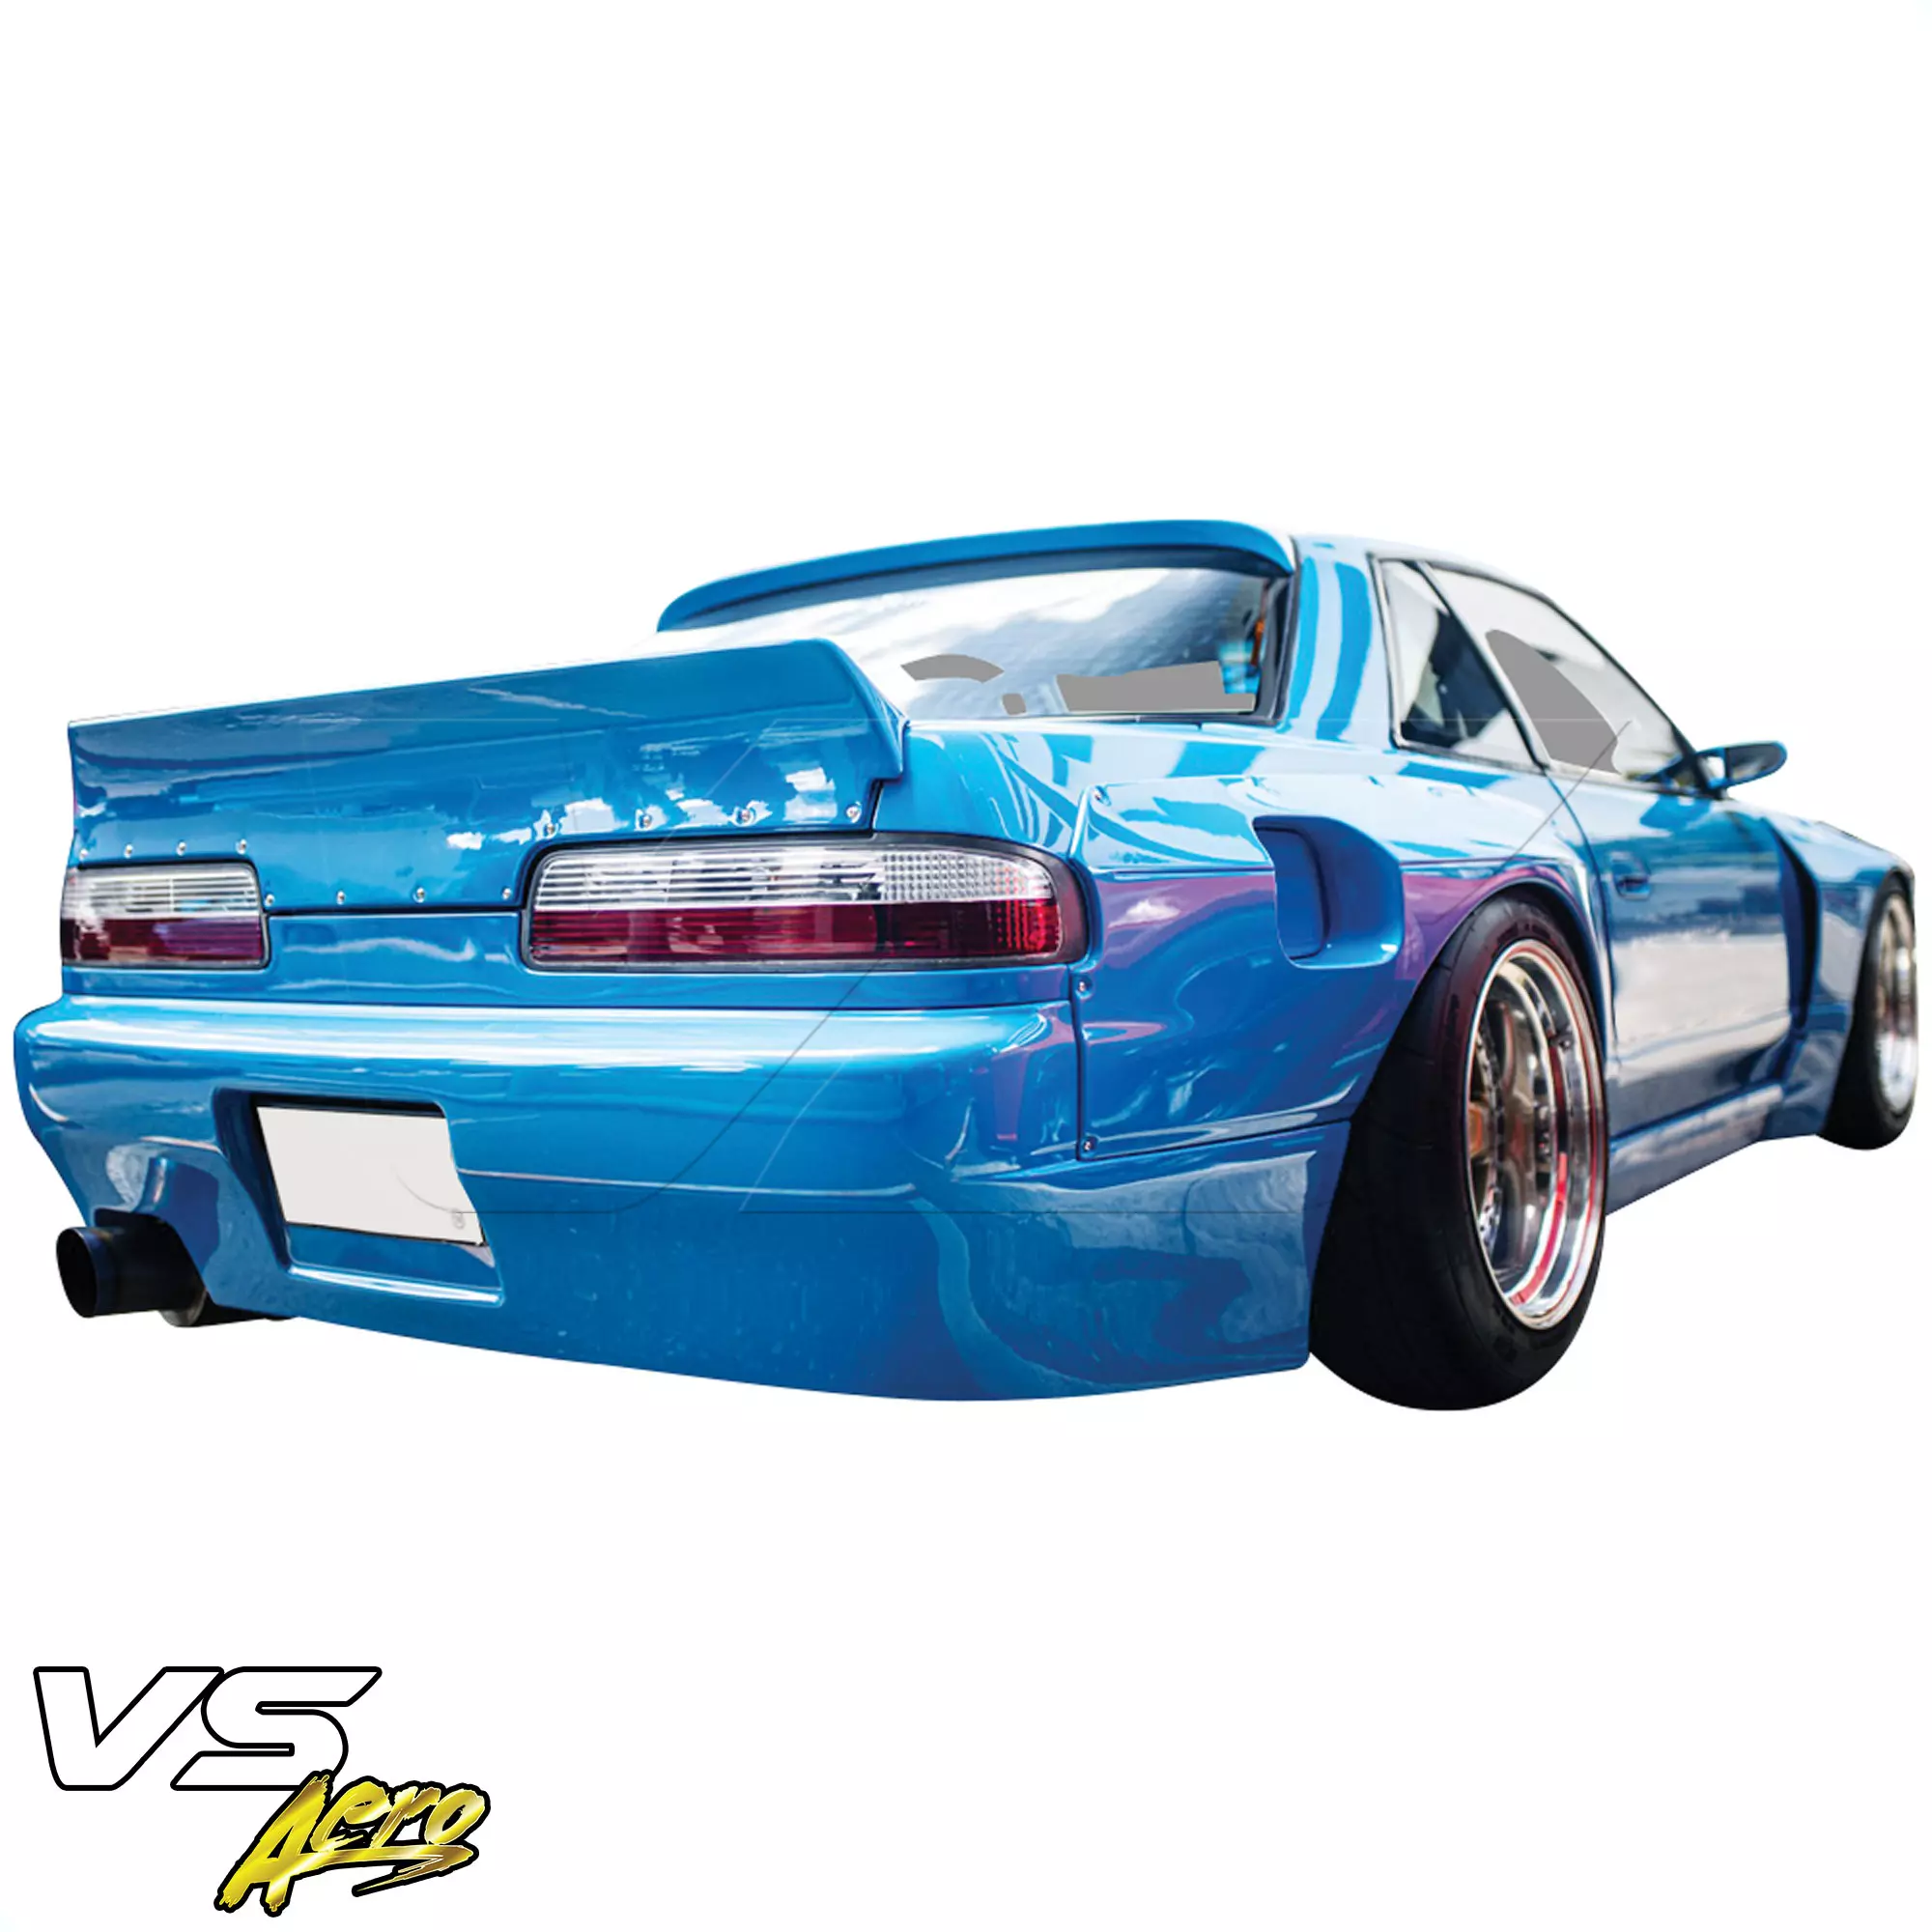 VSaero FRP TKYO v3 Wide Body Rear Bumper > Nissan Silvia S13 1989-1994 > 2dr Coupe - Image 7